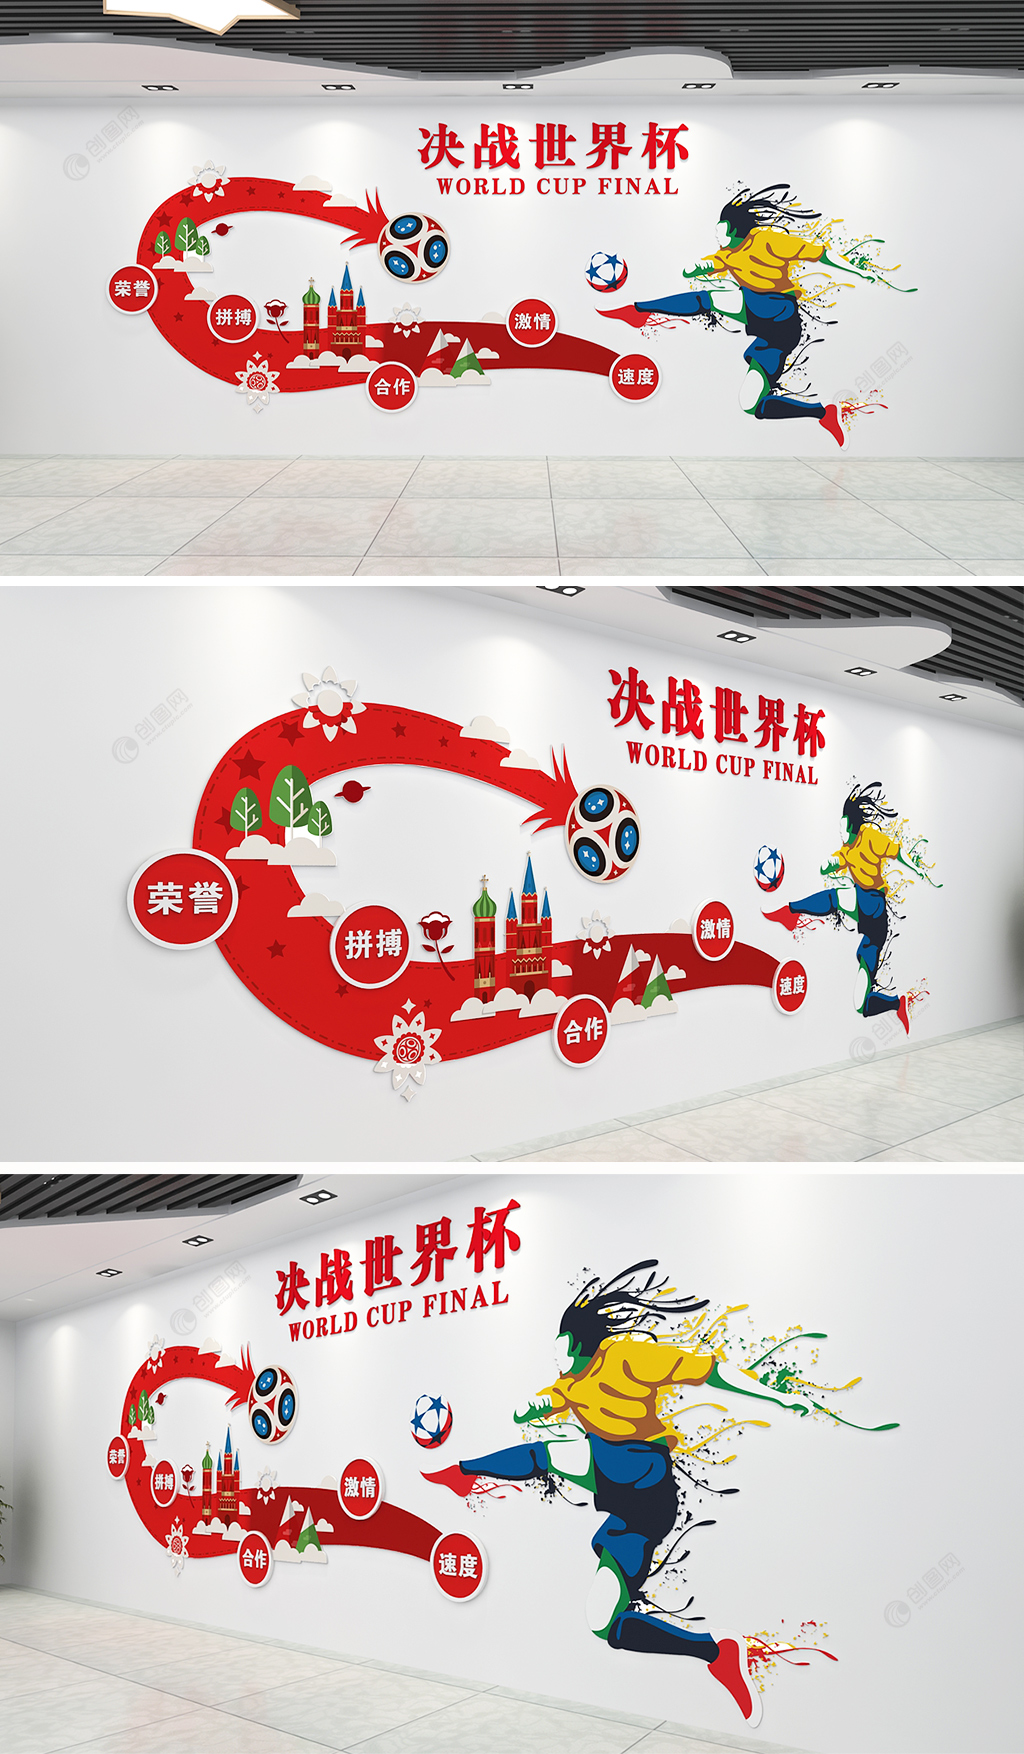 时尚大气3世界杯足球文化墙 室外运动文化墙设计